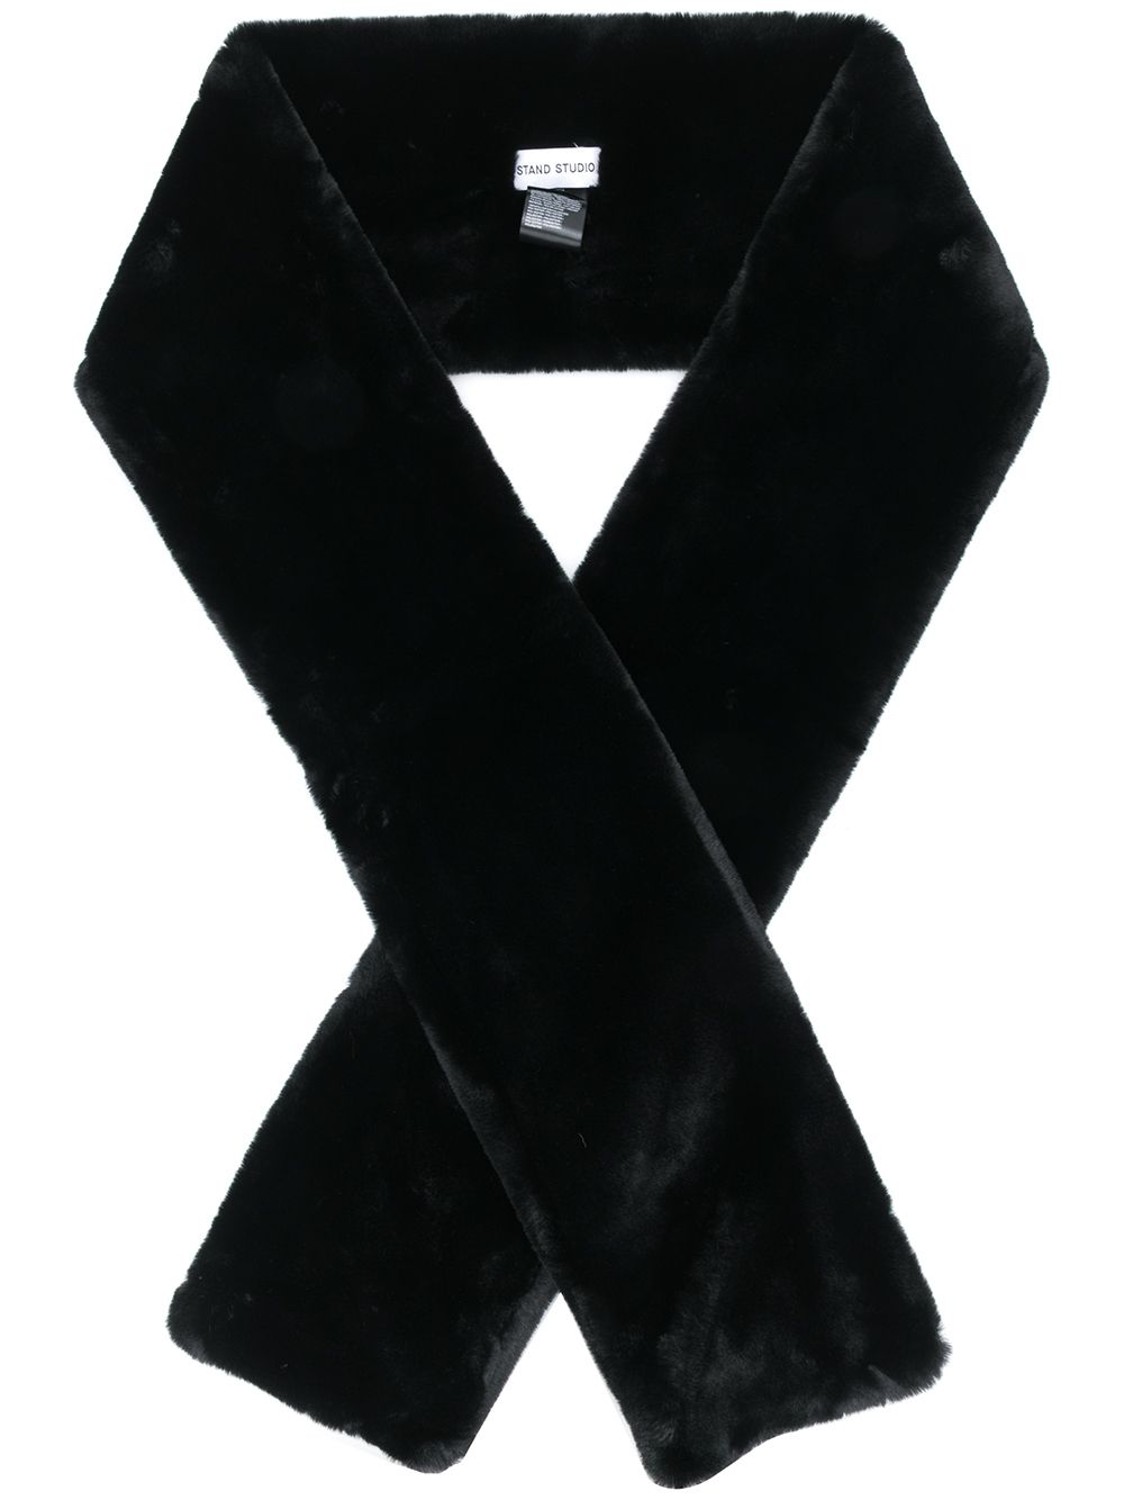 shop Stand Studio  Accessori: Accessori Stand, sciarpa, modello Lily, lunga, in nero, in eco pelliccia.

Composizione: 100% poliestere. number 1563